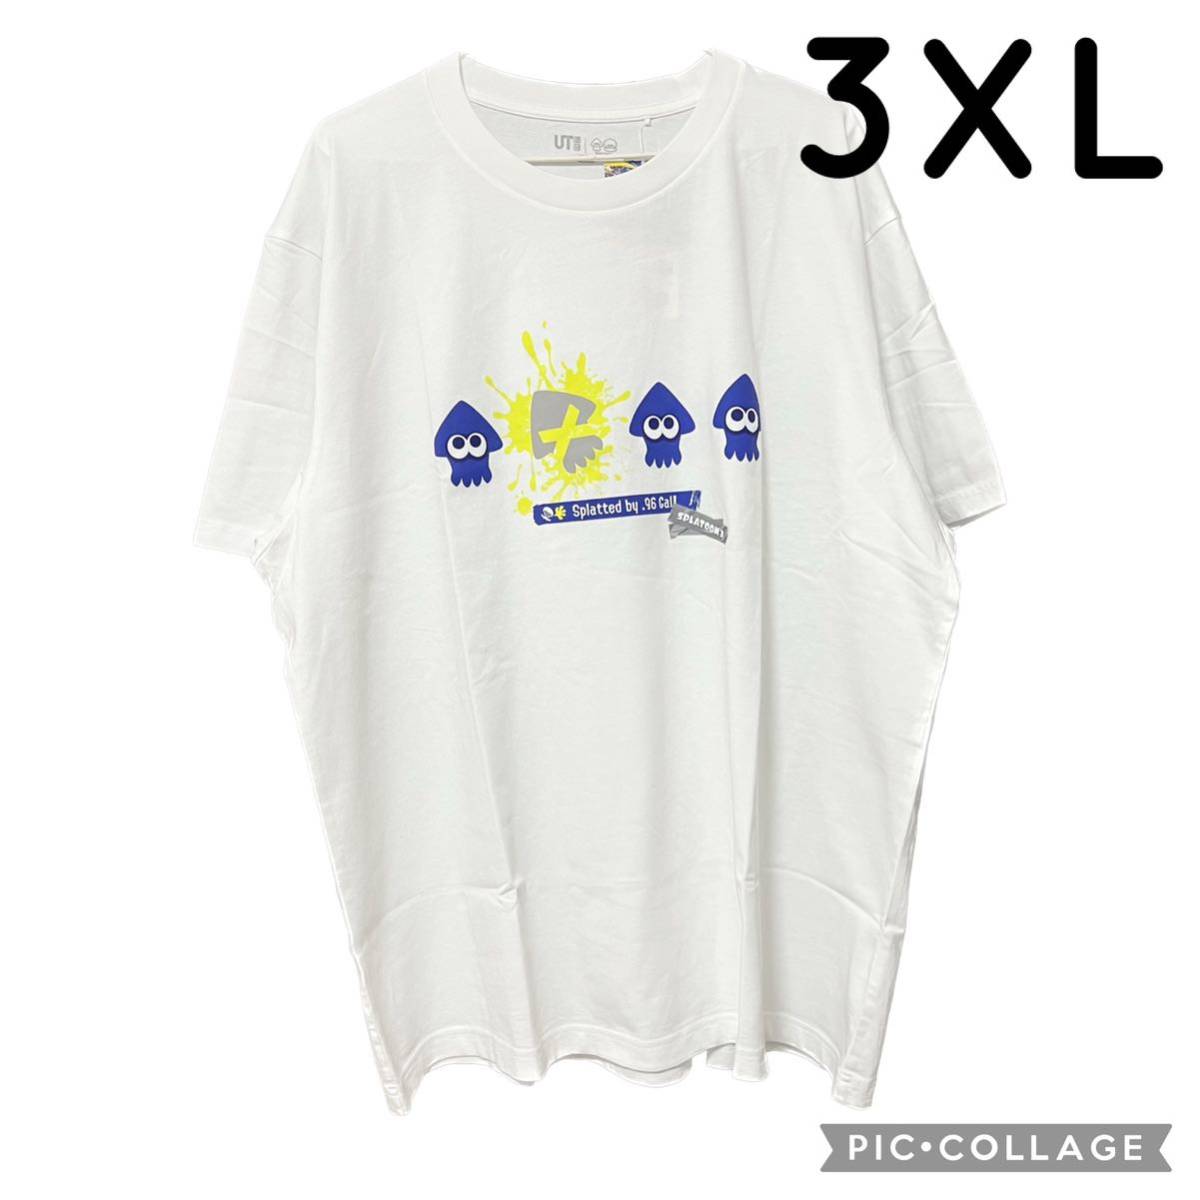 ユニクロ スプラトゥーン3 Tシャツ UT 半袖 ホワイト 3XL 4L UNIQLO イカ いか Splatoon インクリング コラボ ティーシャツ メンズ 新品 白_画像1